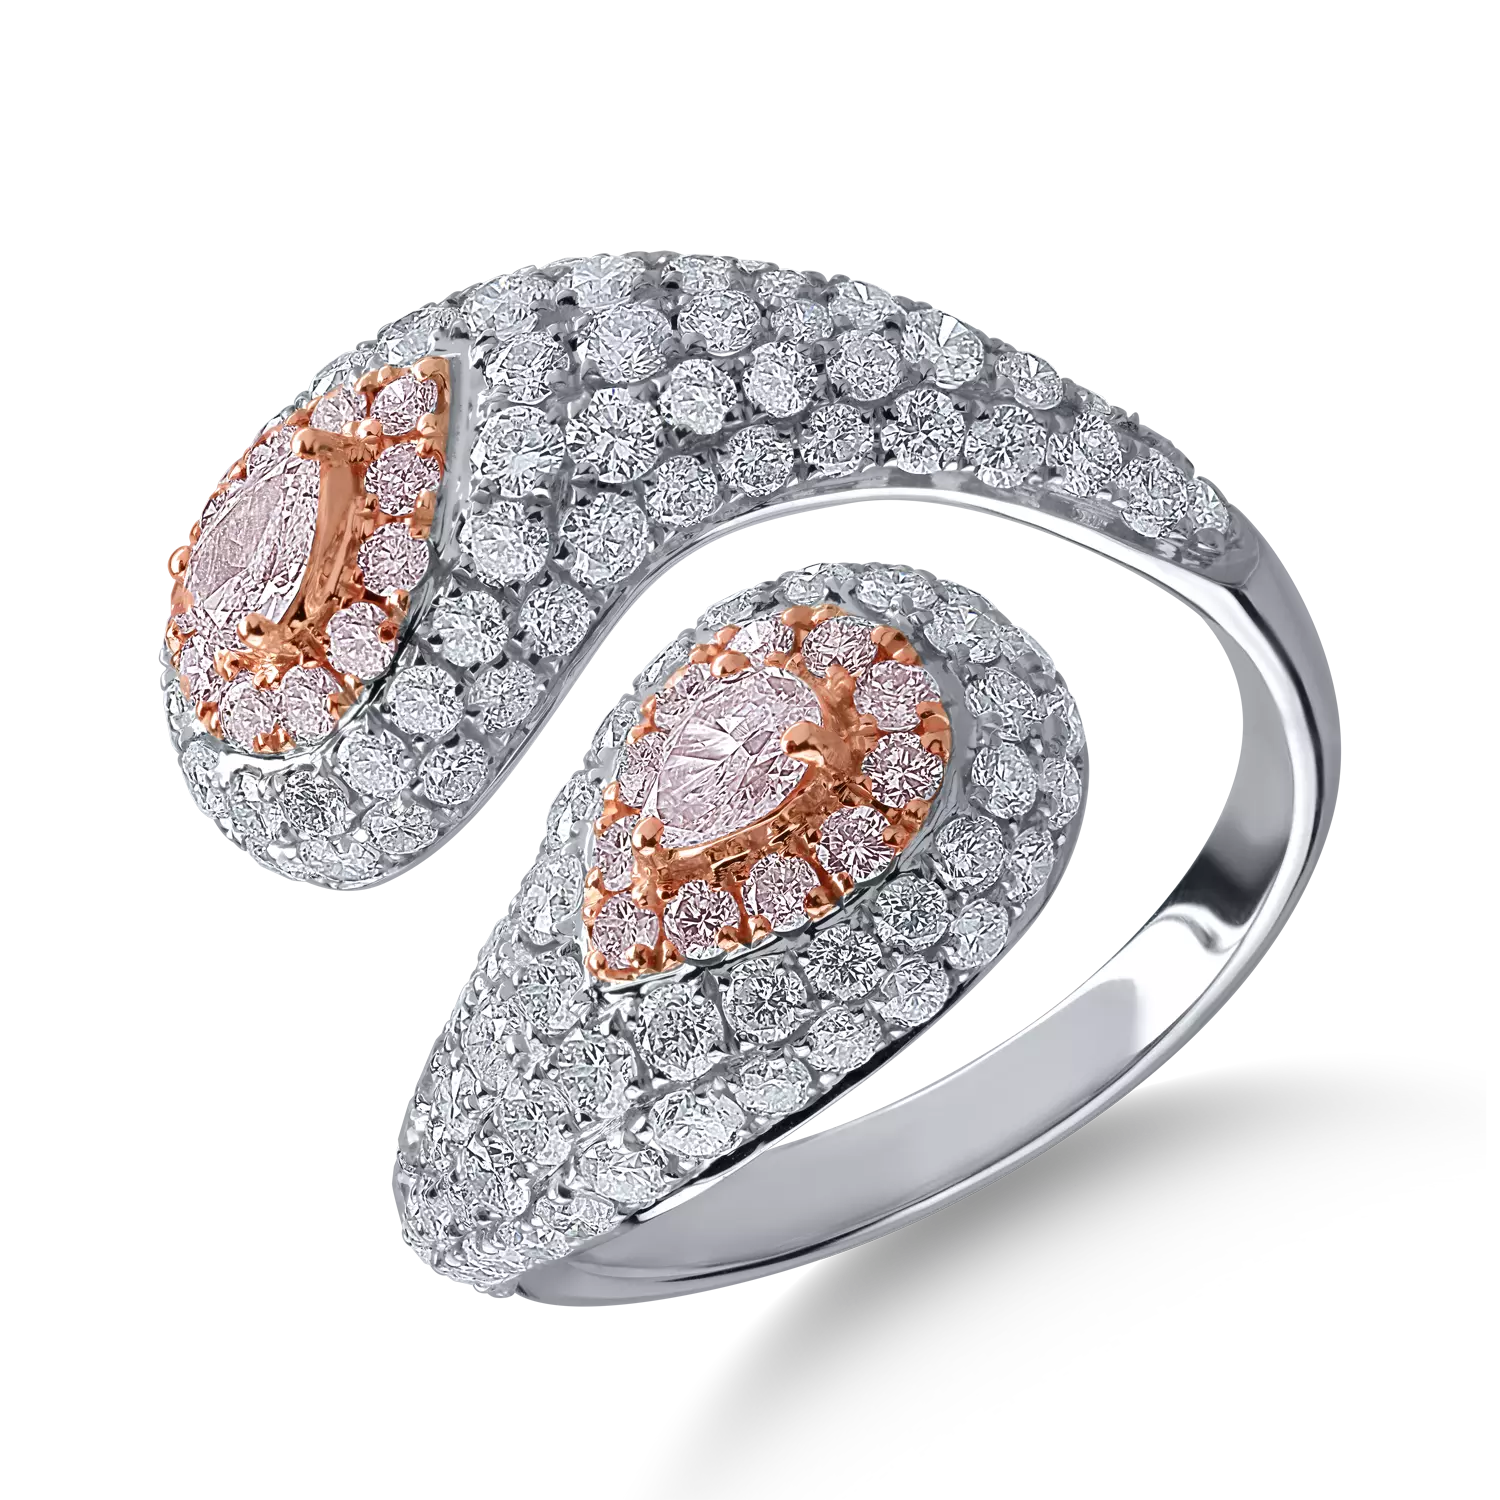 Inel din aur alb-roz cu diamante transparente de 2.09ct si diamante roz de 0.59ct